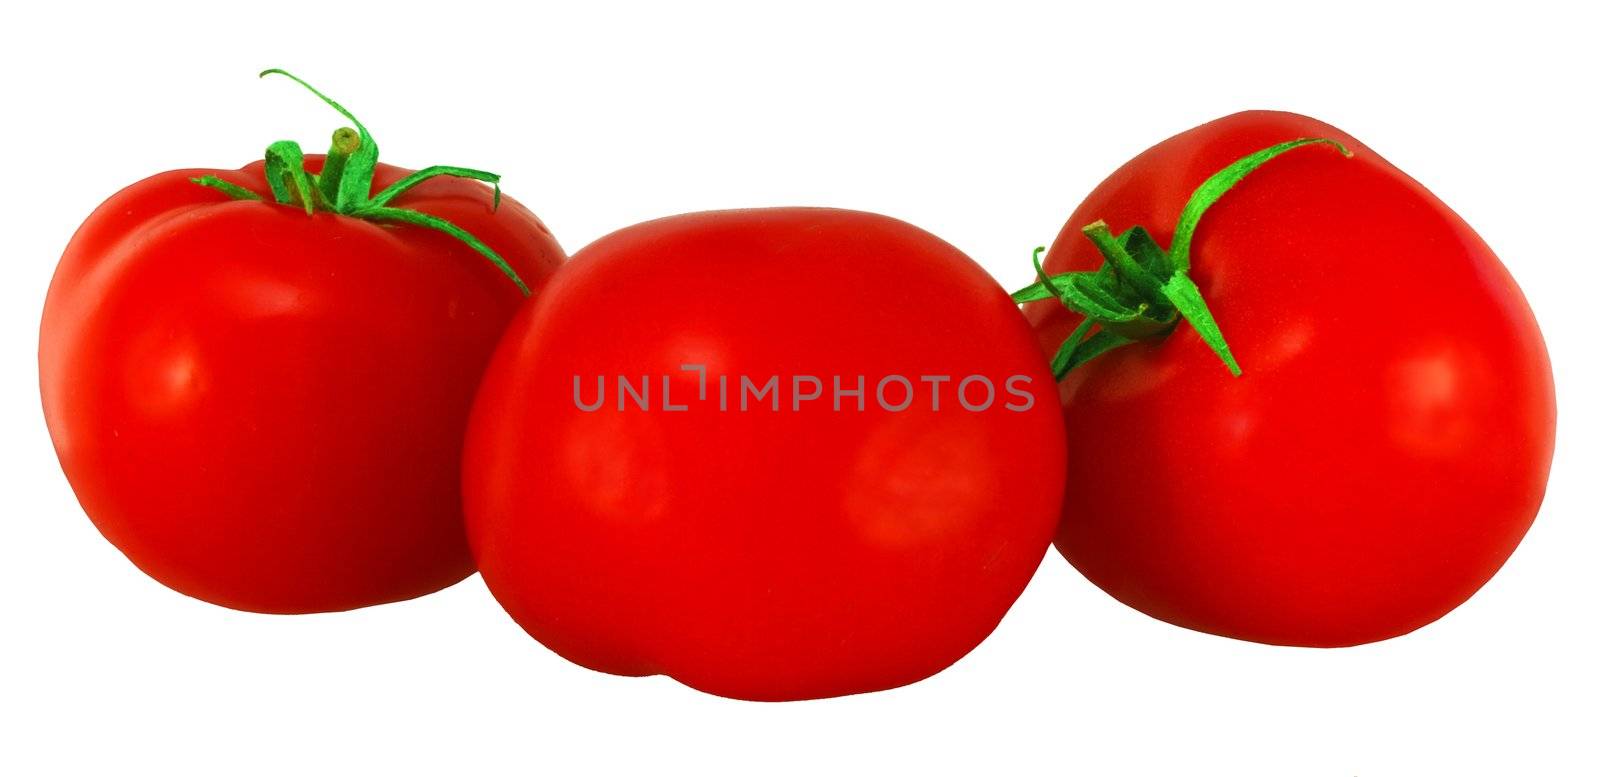 three tomatos on a white background by Sergieiev